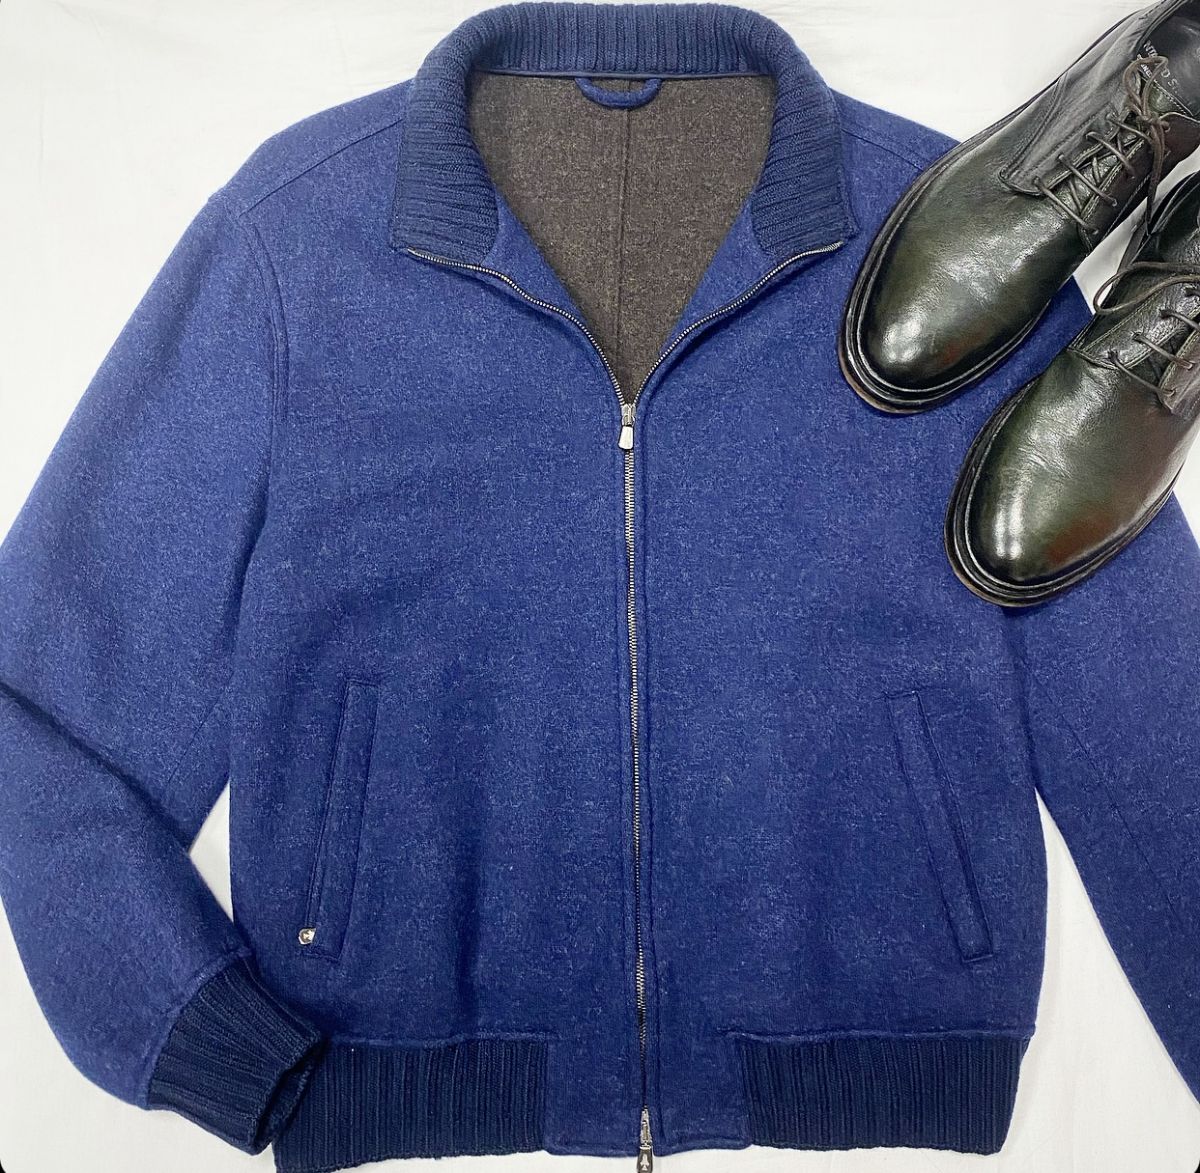 #mechtamen Куртка / кашемир / Atelier Portofino размер 56 цена 30 770 руб Ботинки Untamed Street размер 46 цена 30 770 руб